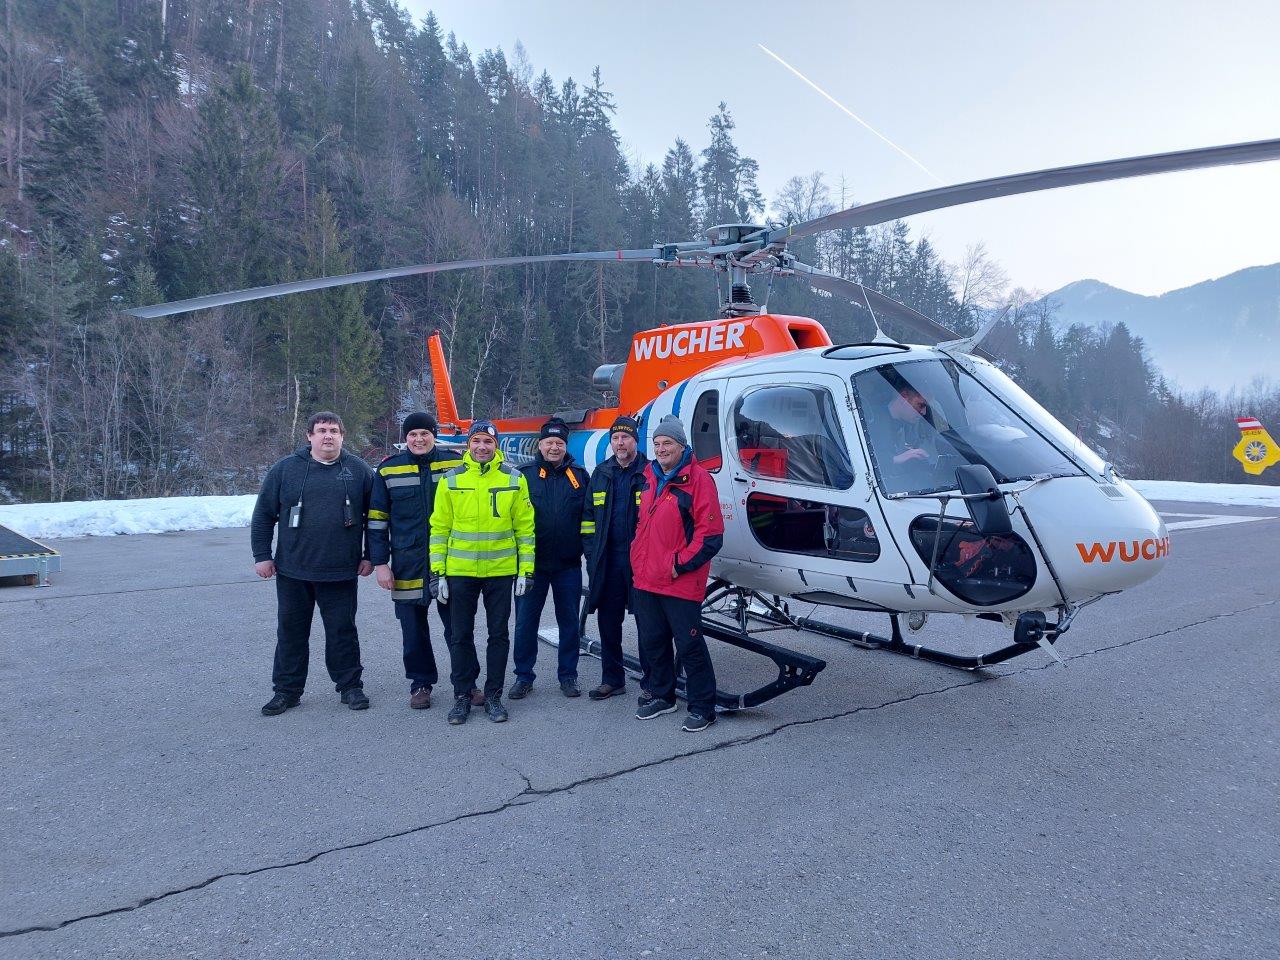 Ausbildung "Lawinensprengen vom Hubschrauber" in Ludesch/Vorarlberg